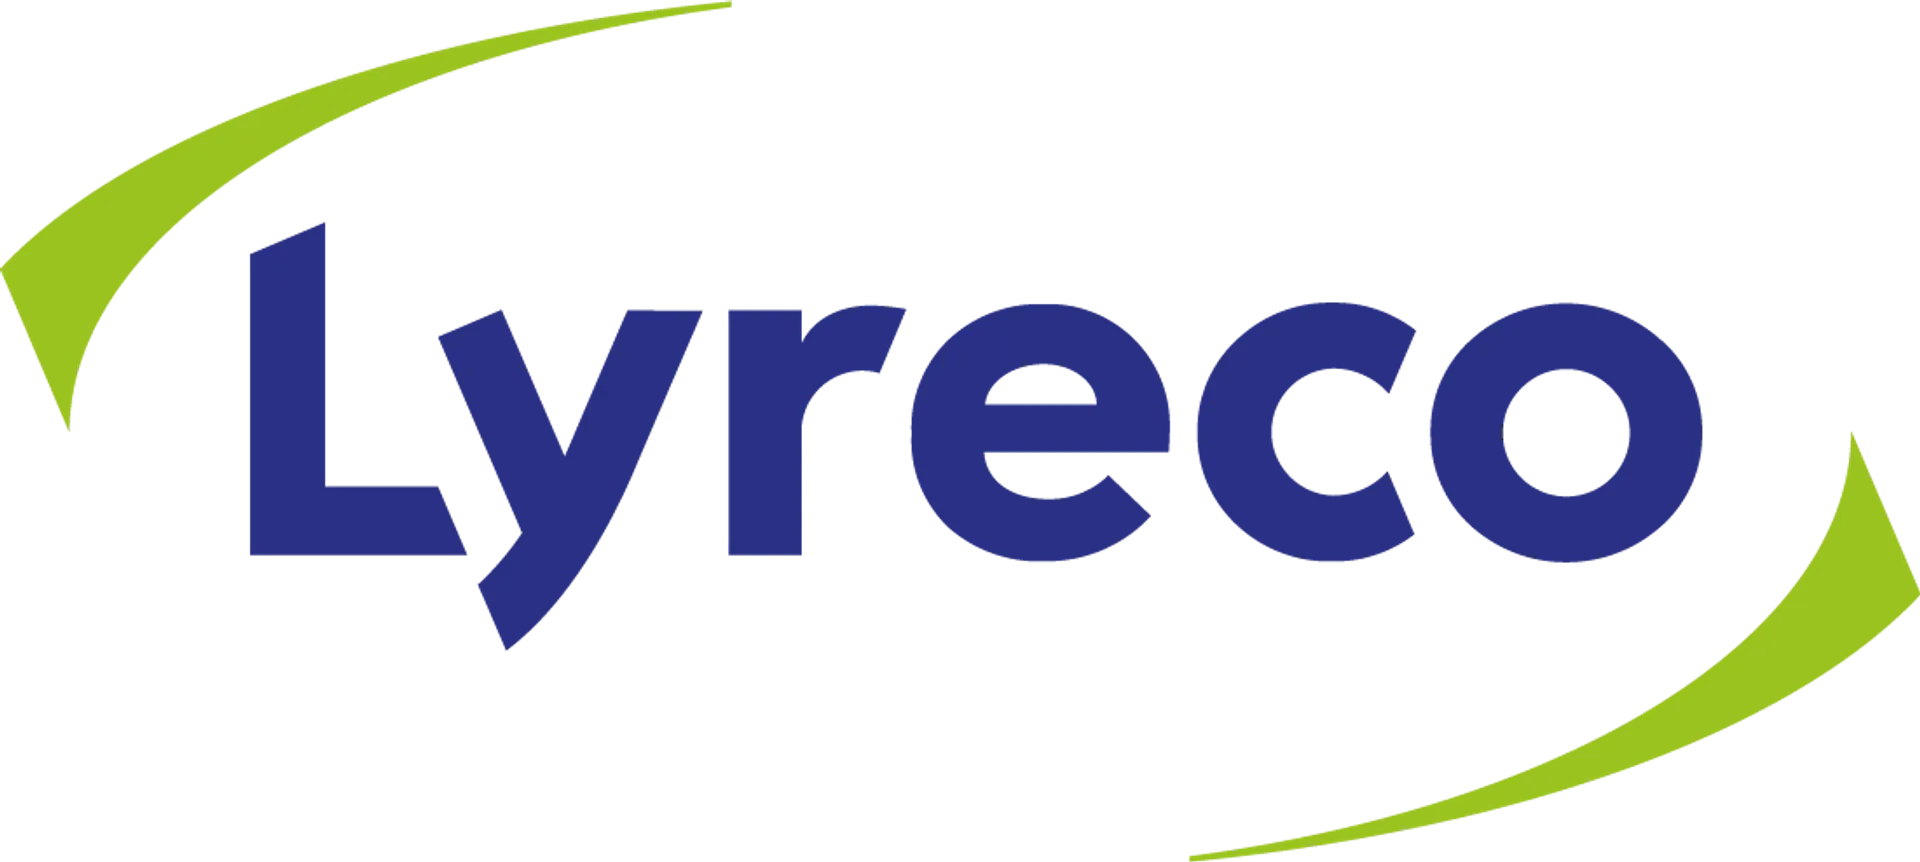 LYRECO logo of current flyer